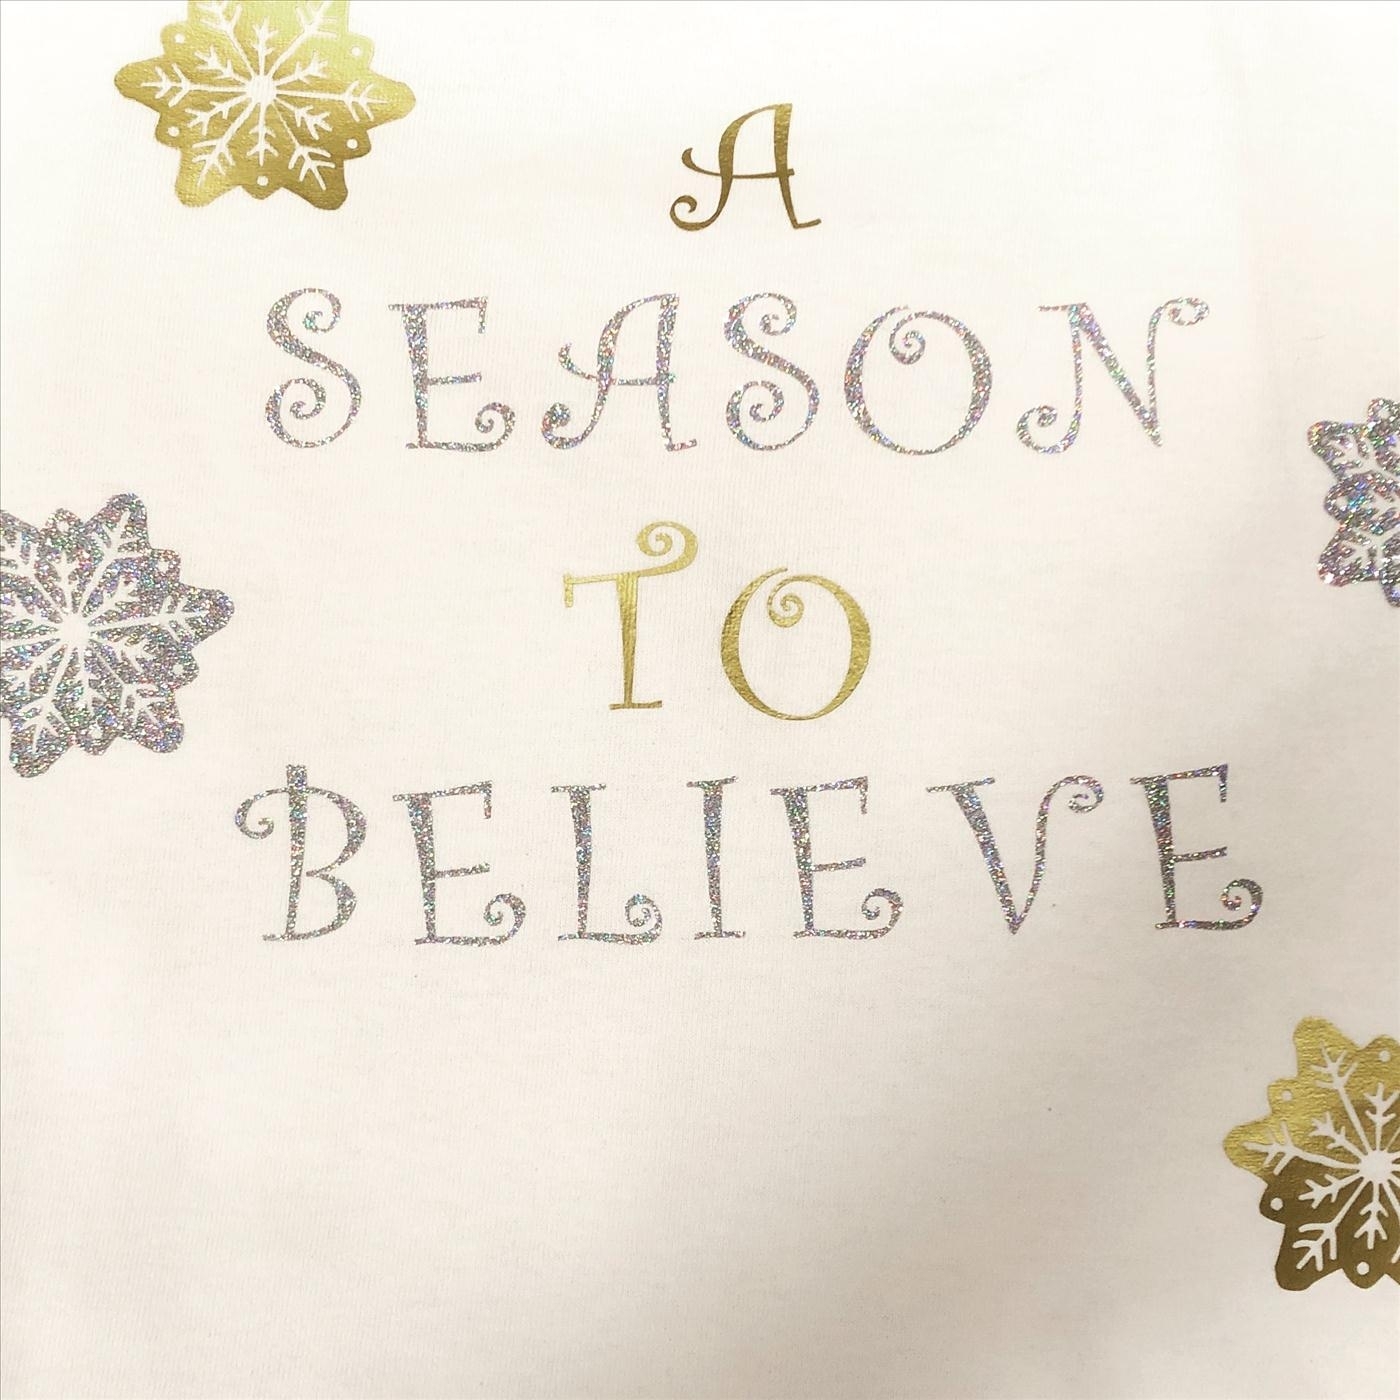 A Season to Believe